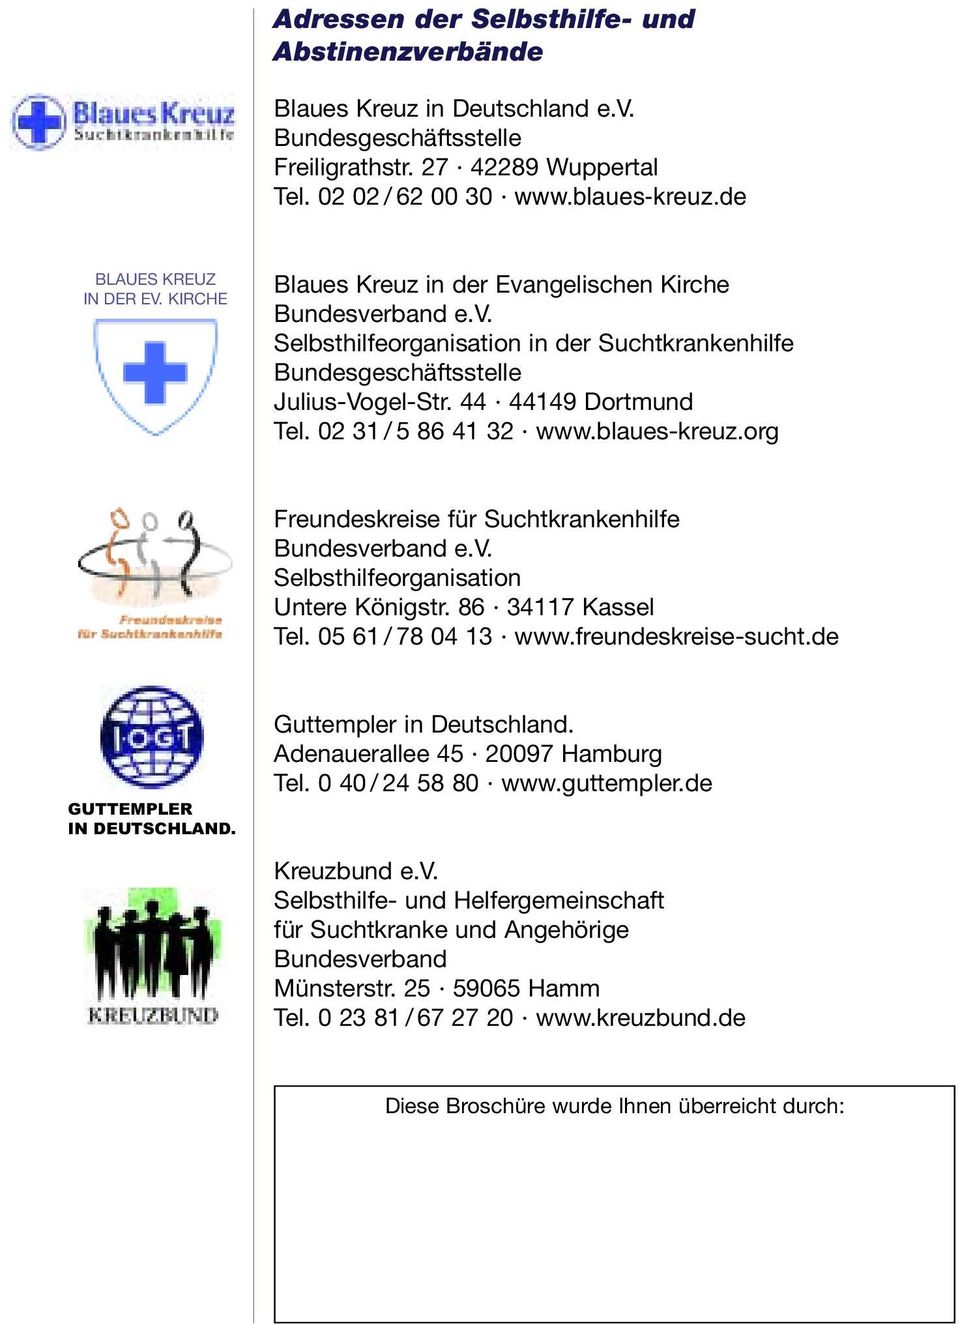 44 44149 Dortmund Tel. 02 31 / 5 86 41 32 www.blaues-kreuz.org Freundeskreise für Suchtkrankenhilfe Bundesverband e.v. Selbsthilfeorganisation Untere Königstr. 86 34117 Kassel Tel.